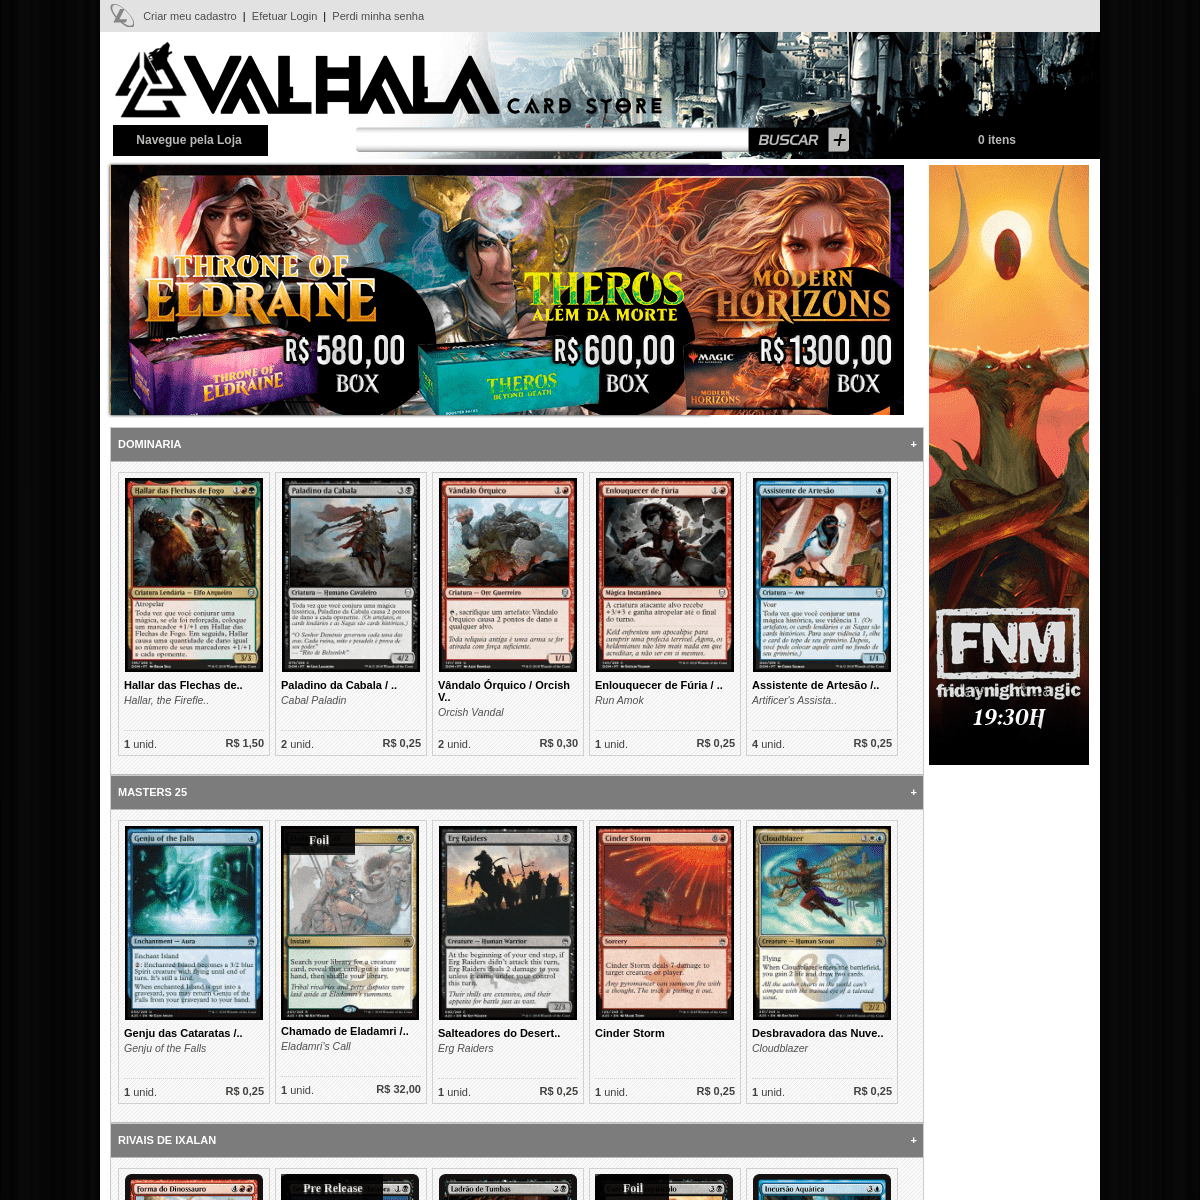 A complete backup of valhalastore.com.br